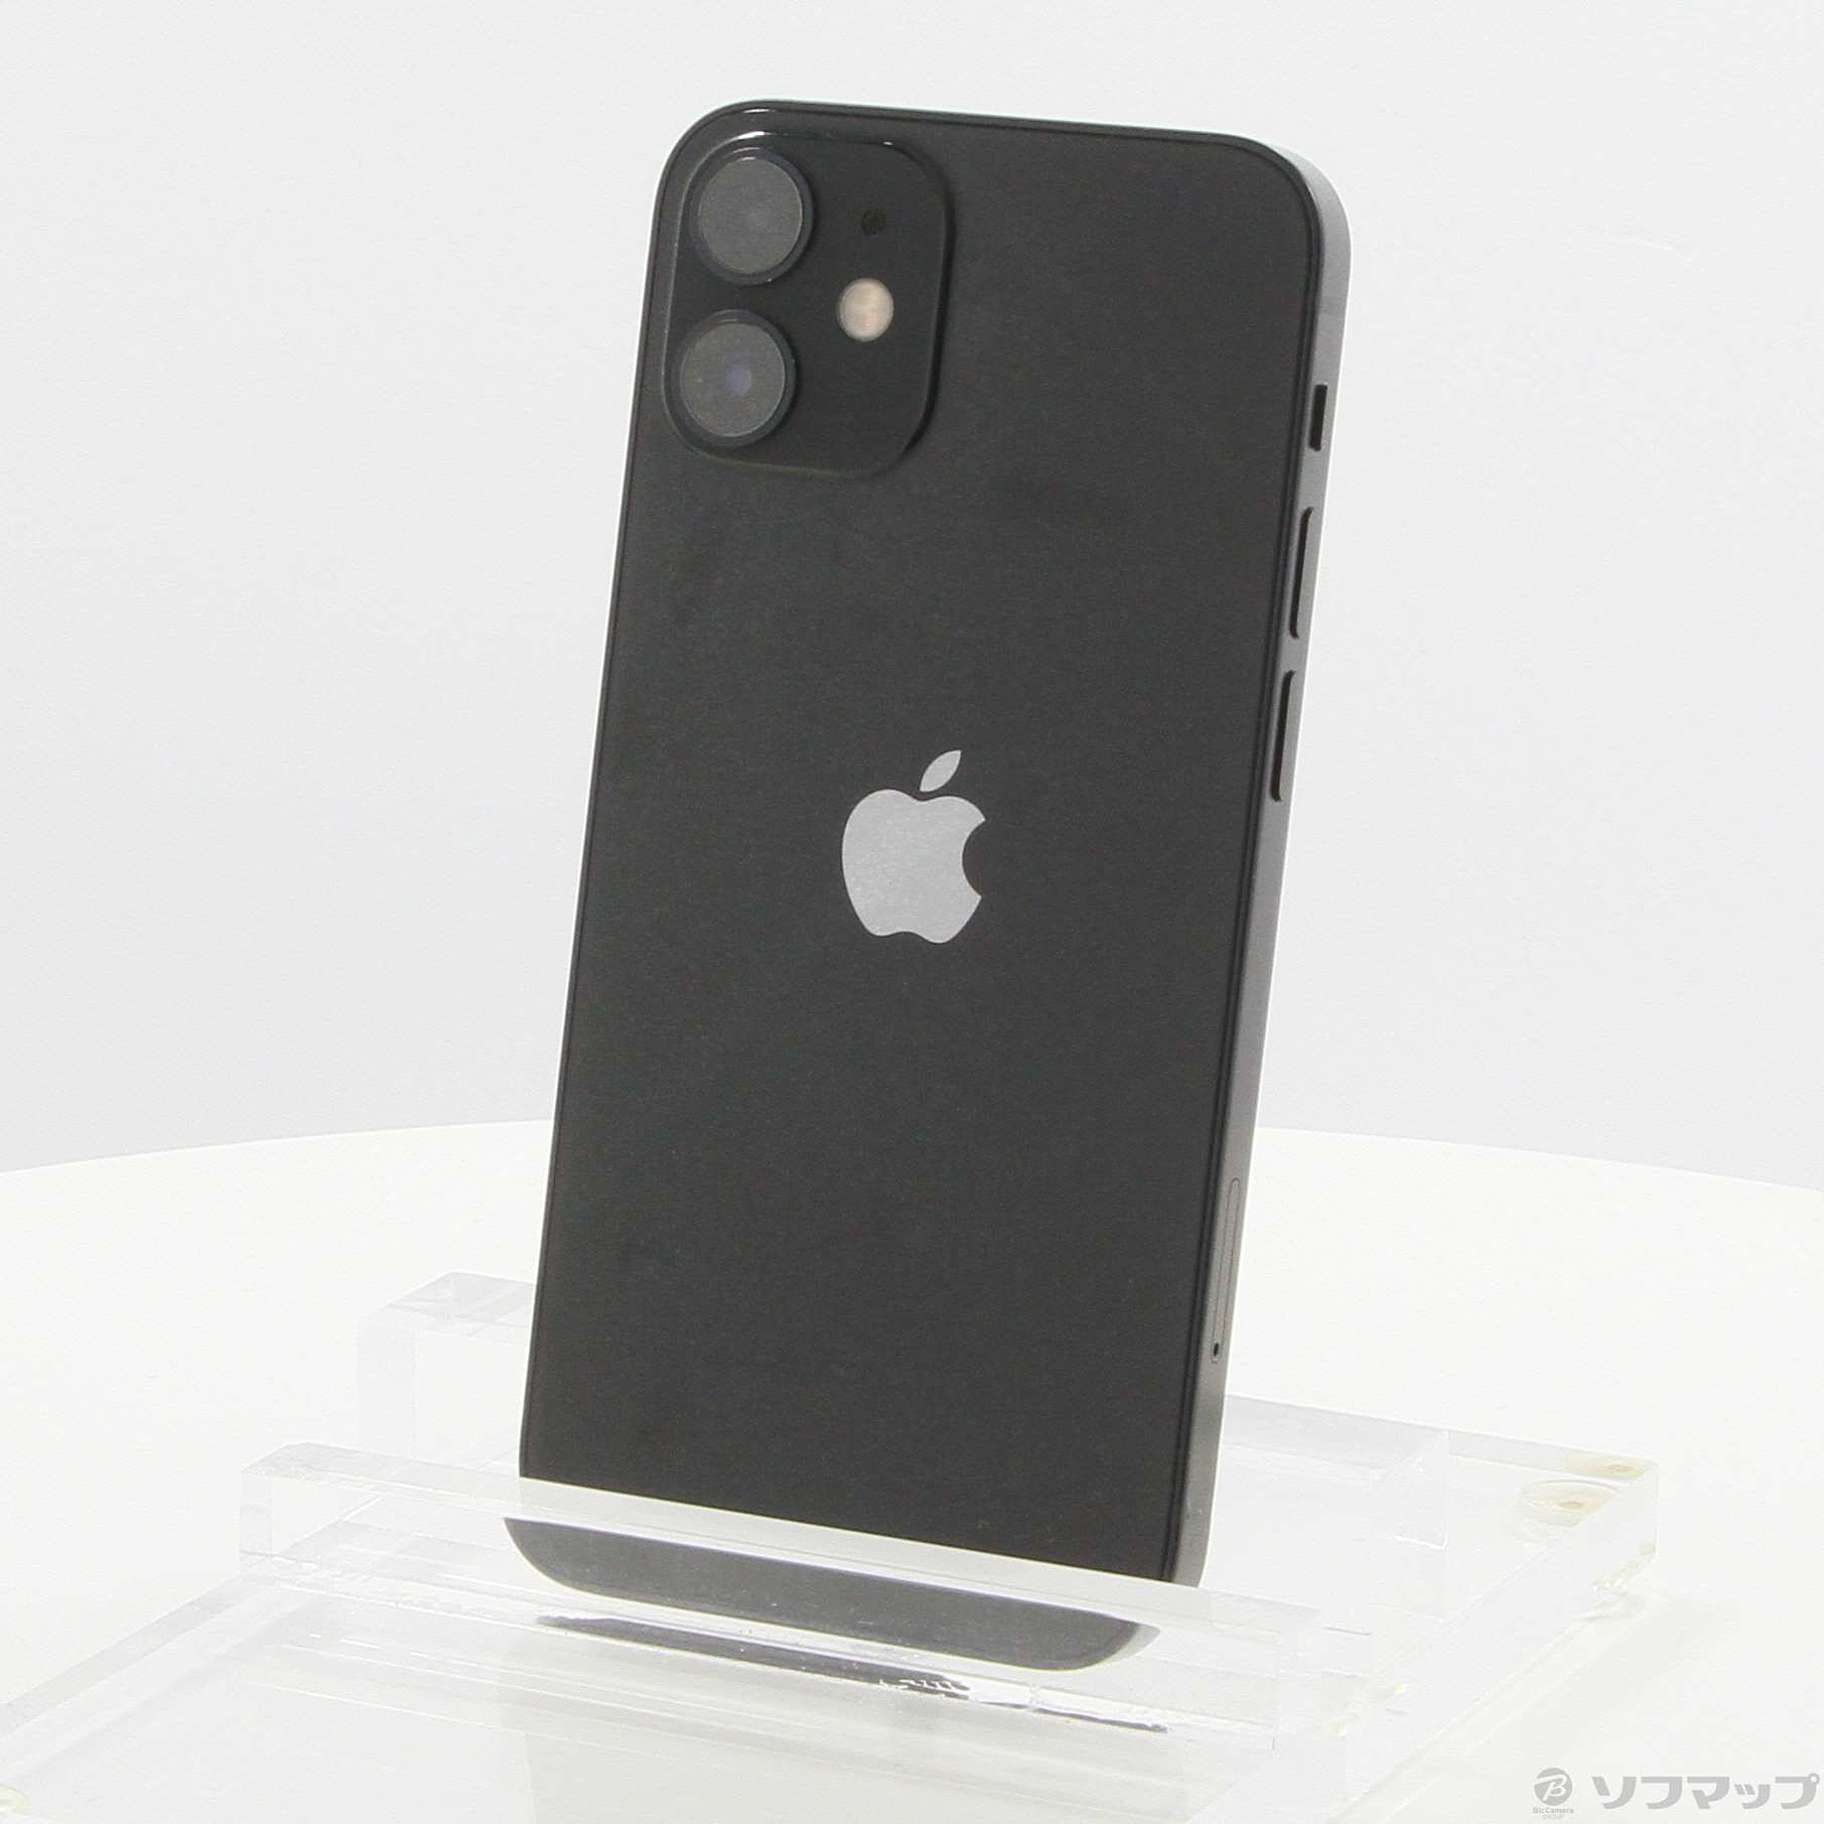 iPhone 12 mini 256GB SIMフリー [ブラック] 中古(白ロム)価格比較